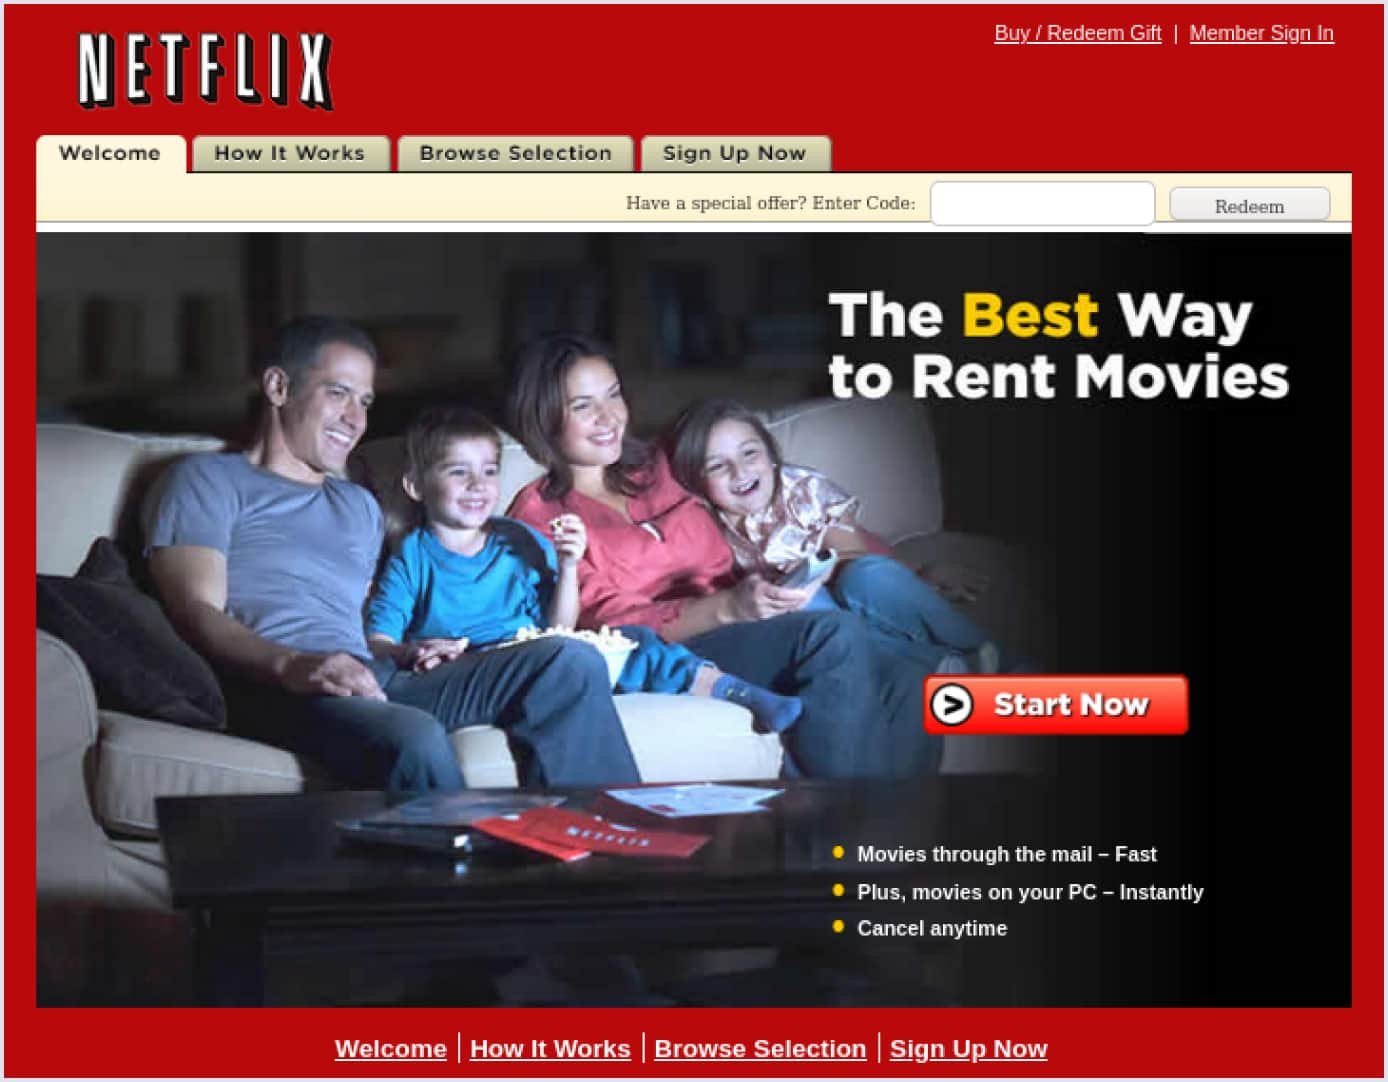 Netflix website in 2007